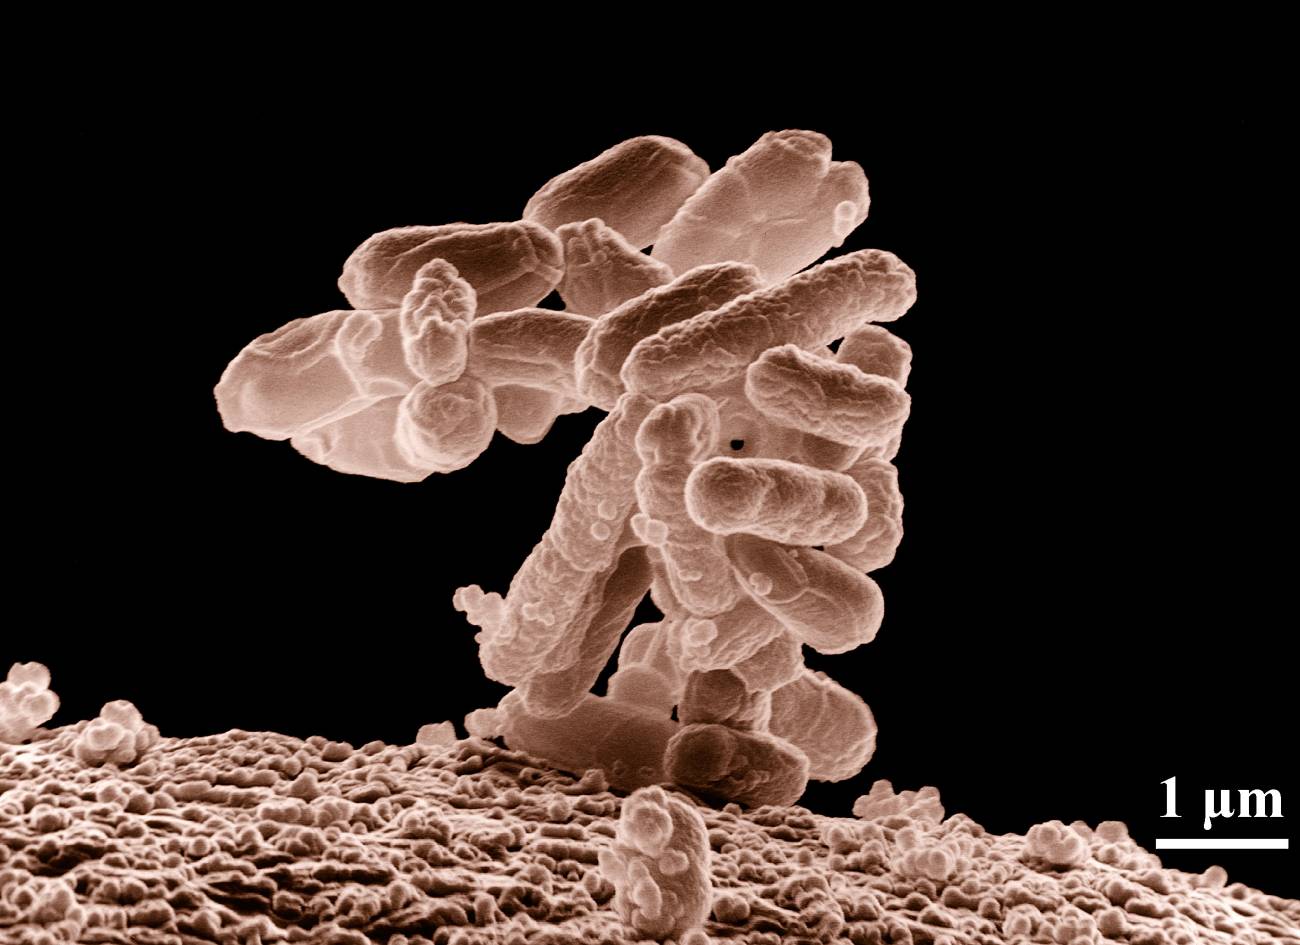 Bacterias E. coli. Fuente: Wikimedia Commons